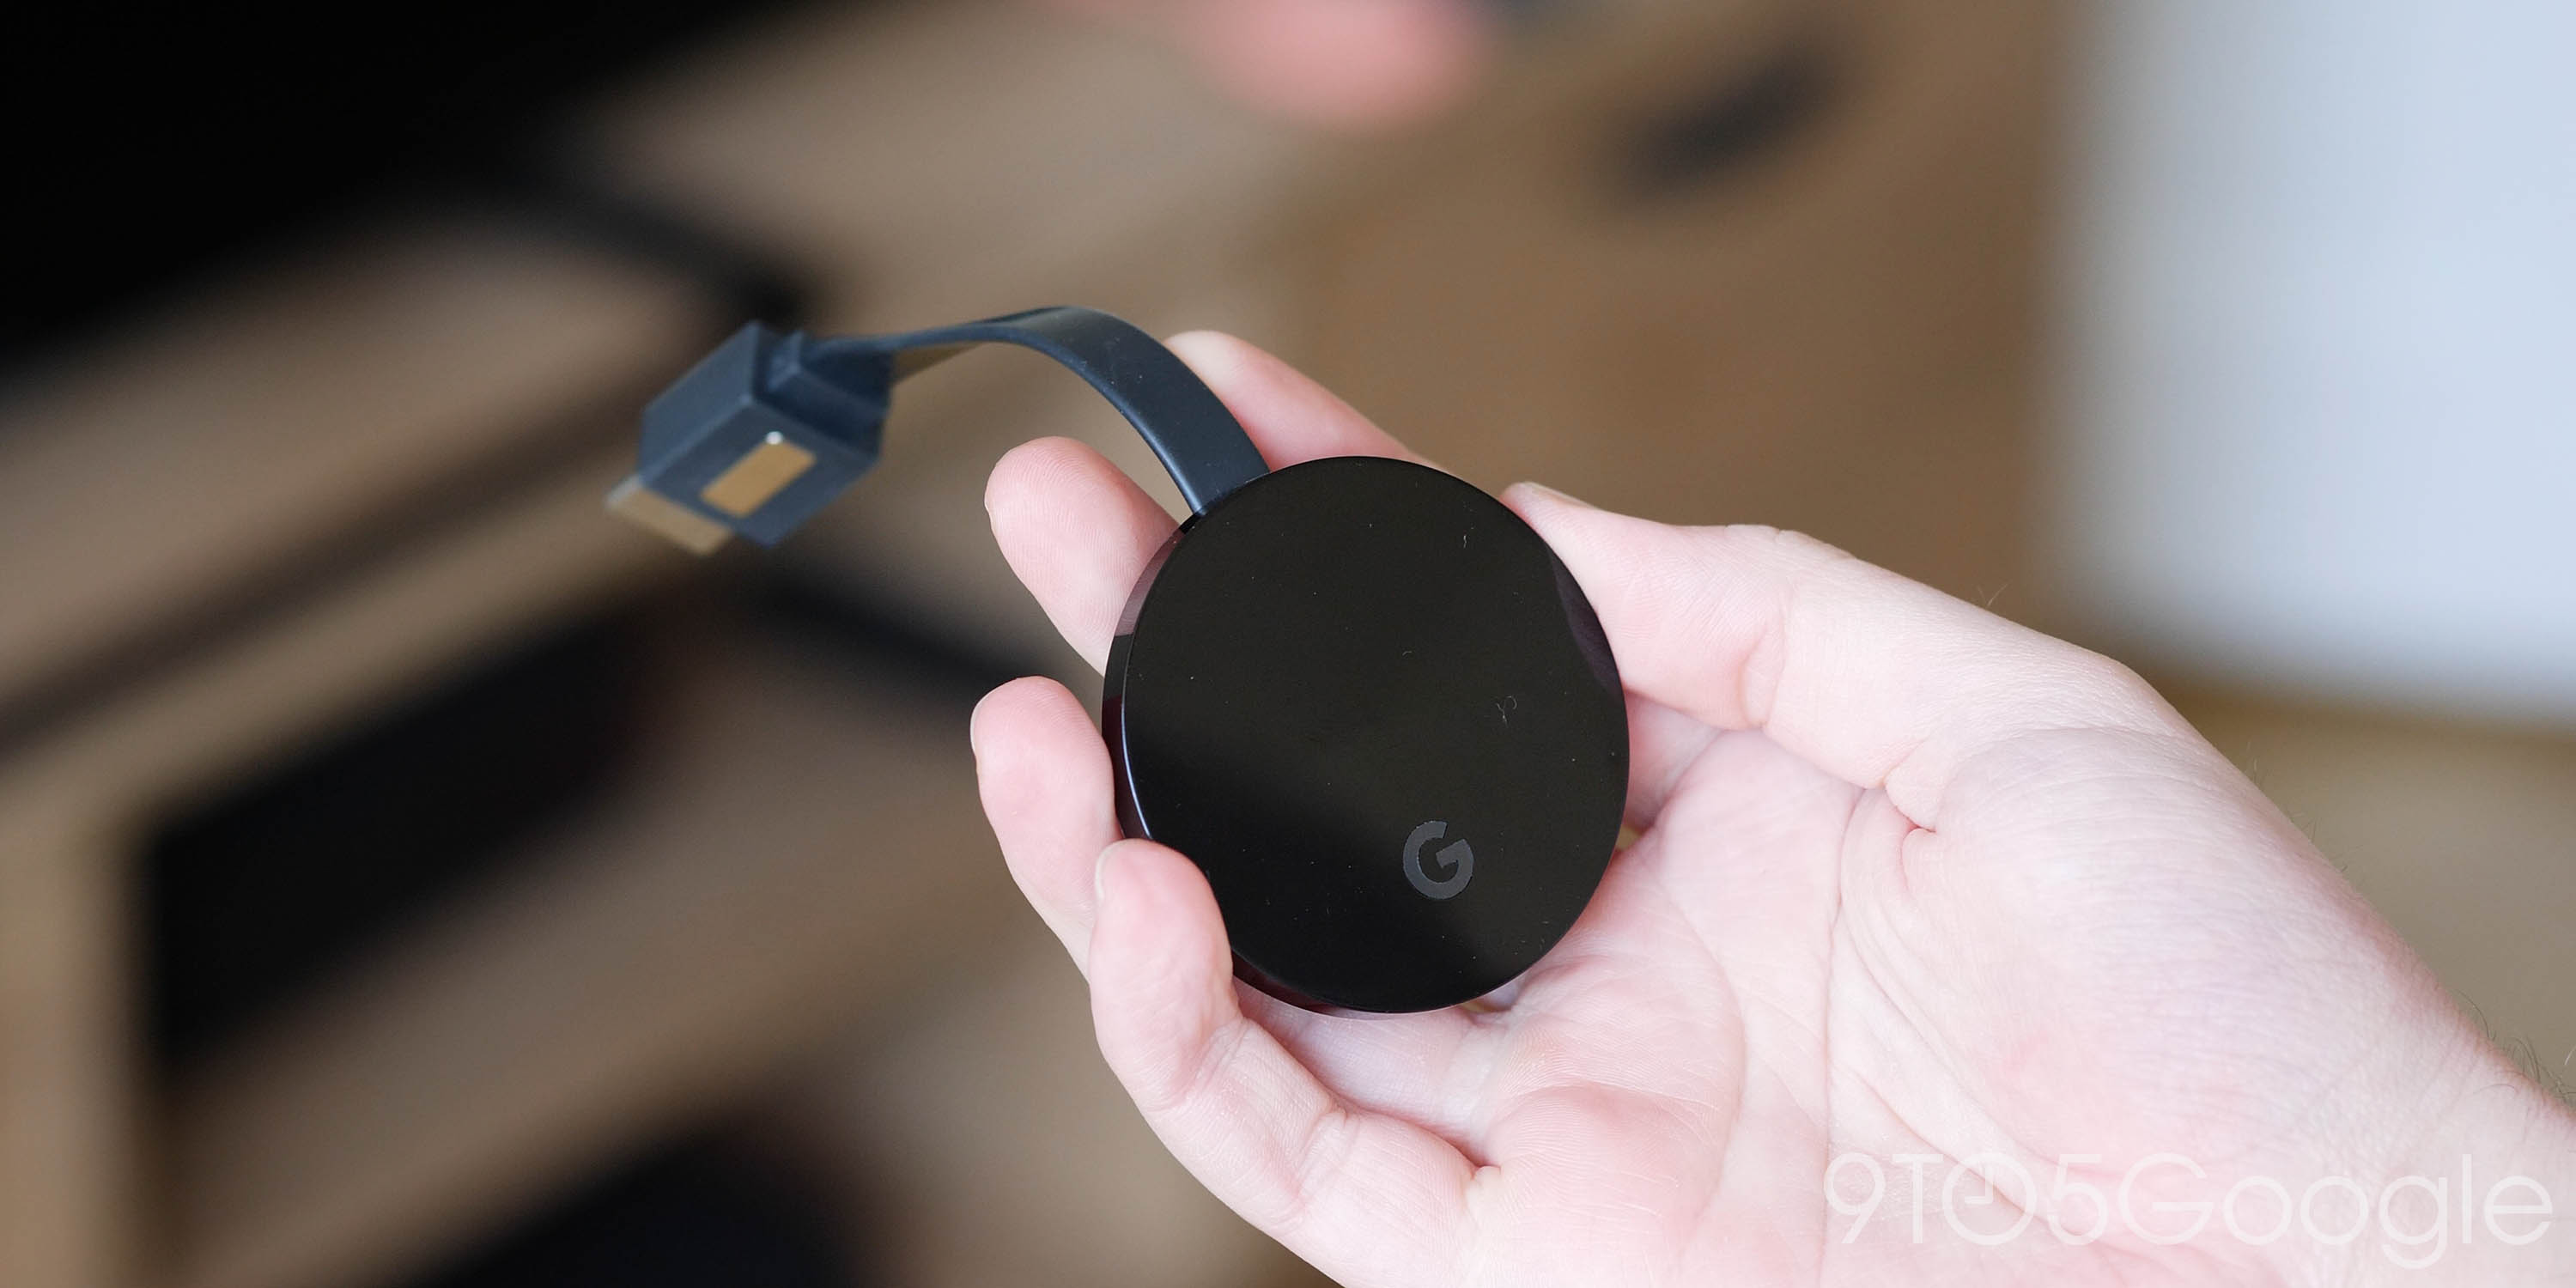 Google removes Chromecast's guest mode feature